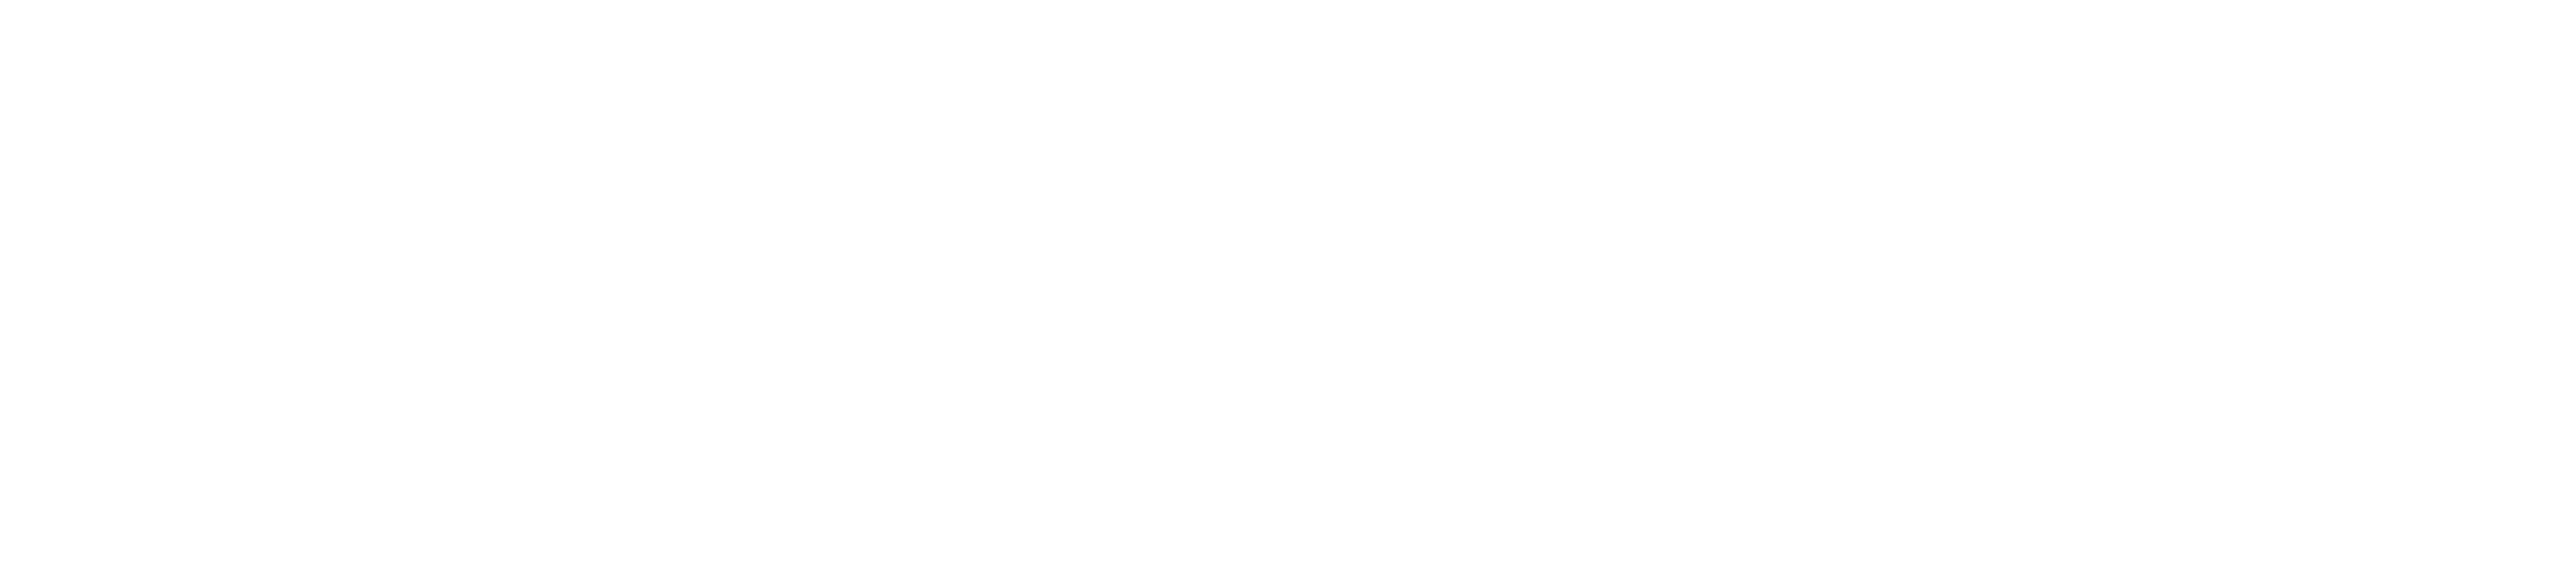 Rewind logo - White
